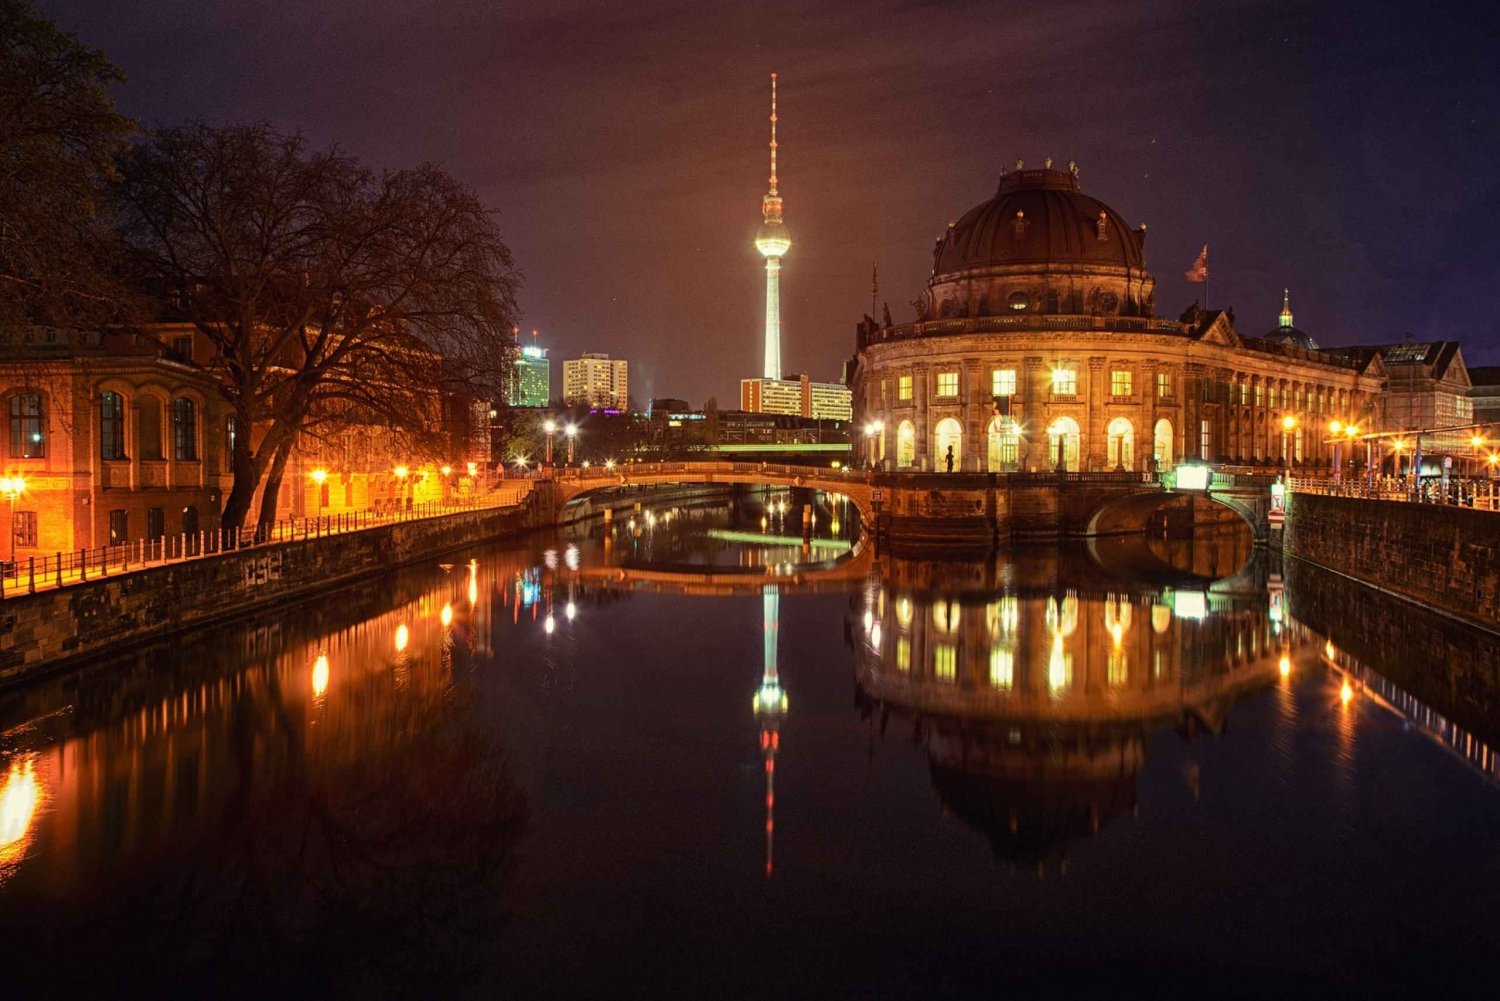 Berlijn bij nacht: romantische maanboottocht